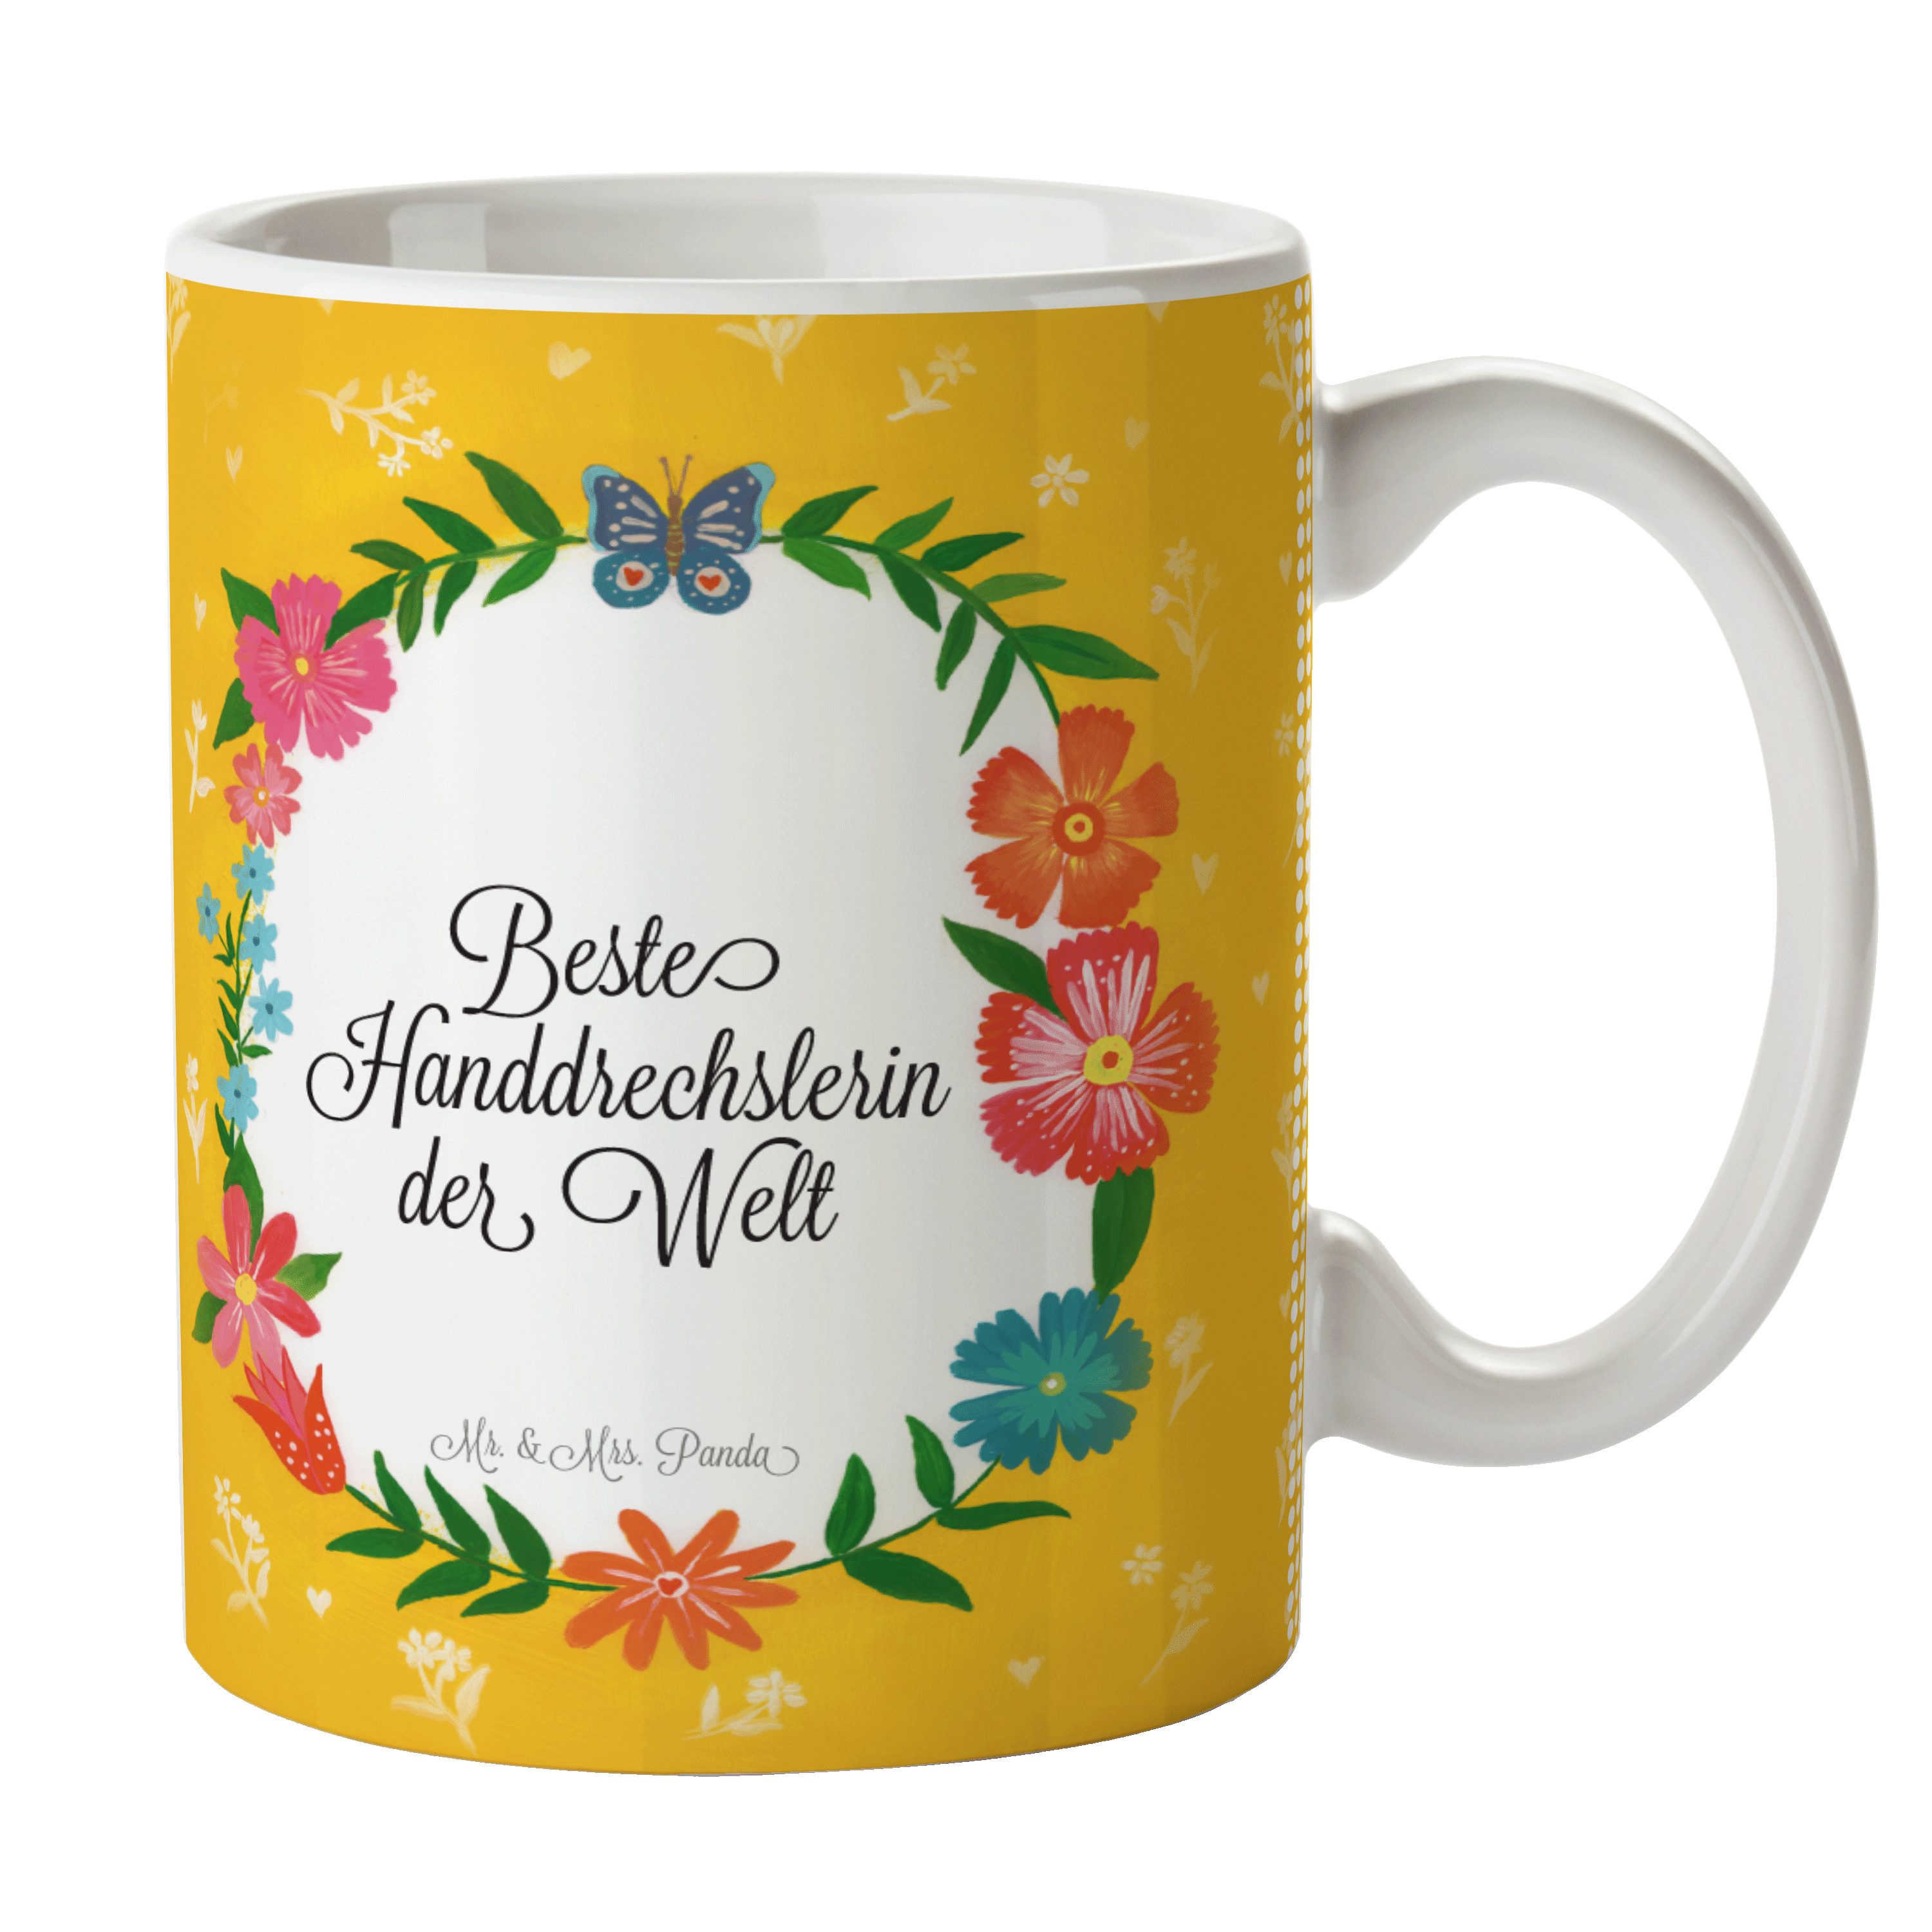 Mr. & Mrs. Panda Tasse Handdrechslerin - Geschenk, Gratulation, Kaffeetasse, Becher, Tasse, Keramik